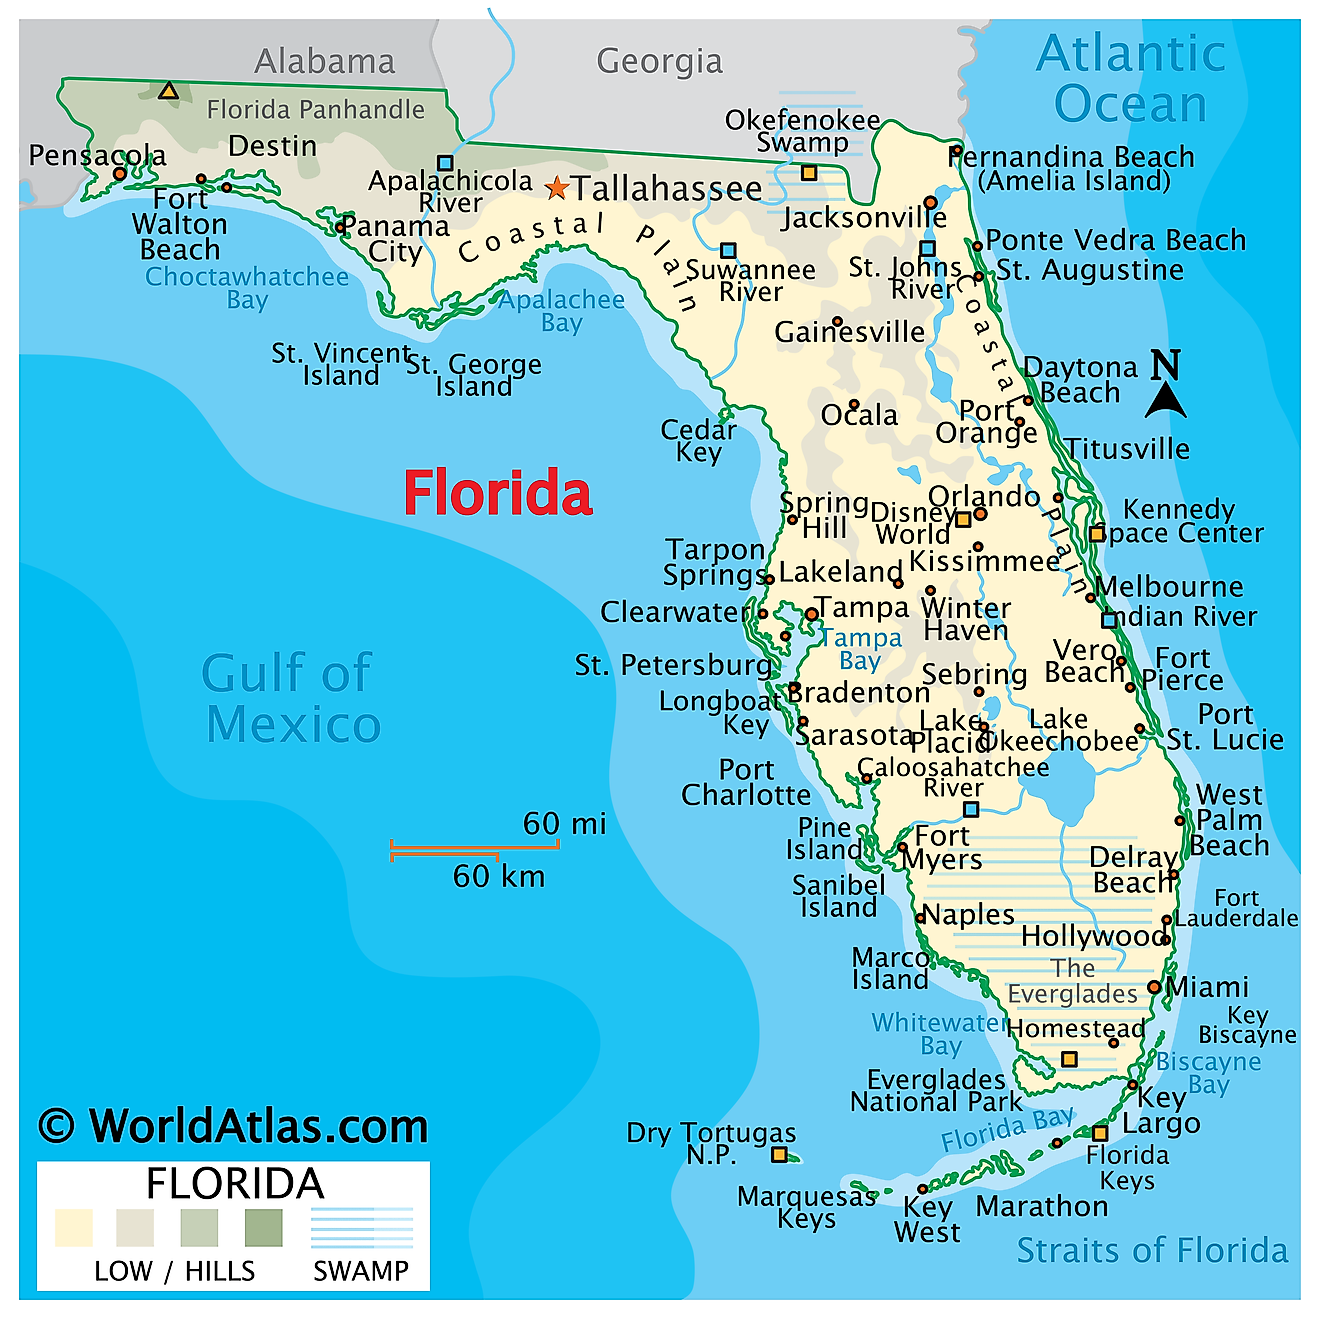 Mapa Físico de Florida. Muestra las características físicas de Florida, incluidas cadenas montañosas, ríos, lagos, llanuras costeras, los pantanosos Everglades y las islas de los Cayos de Florida.